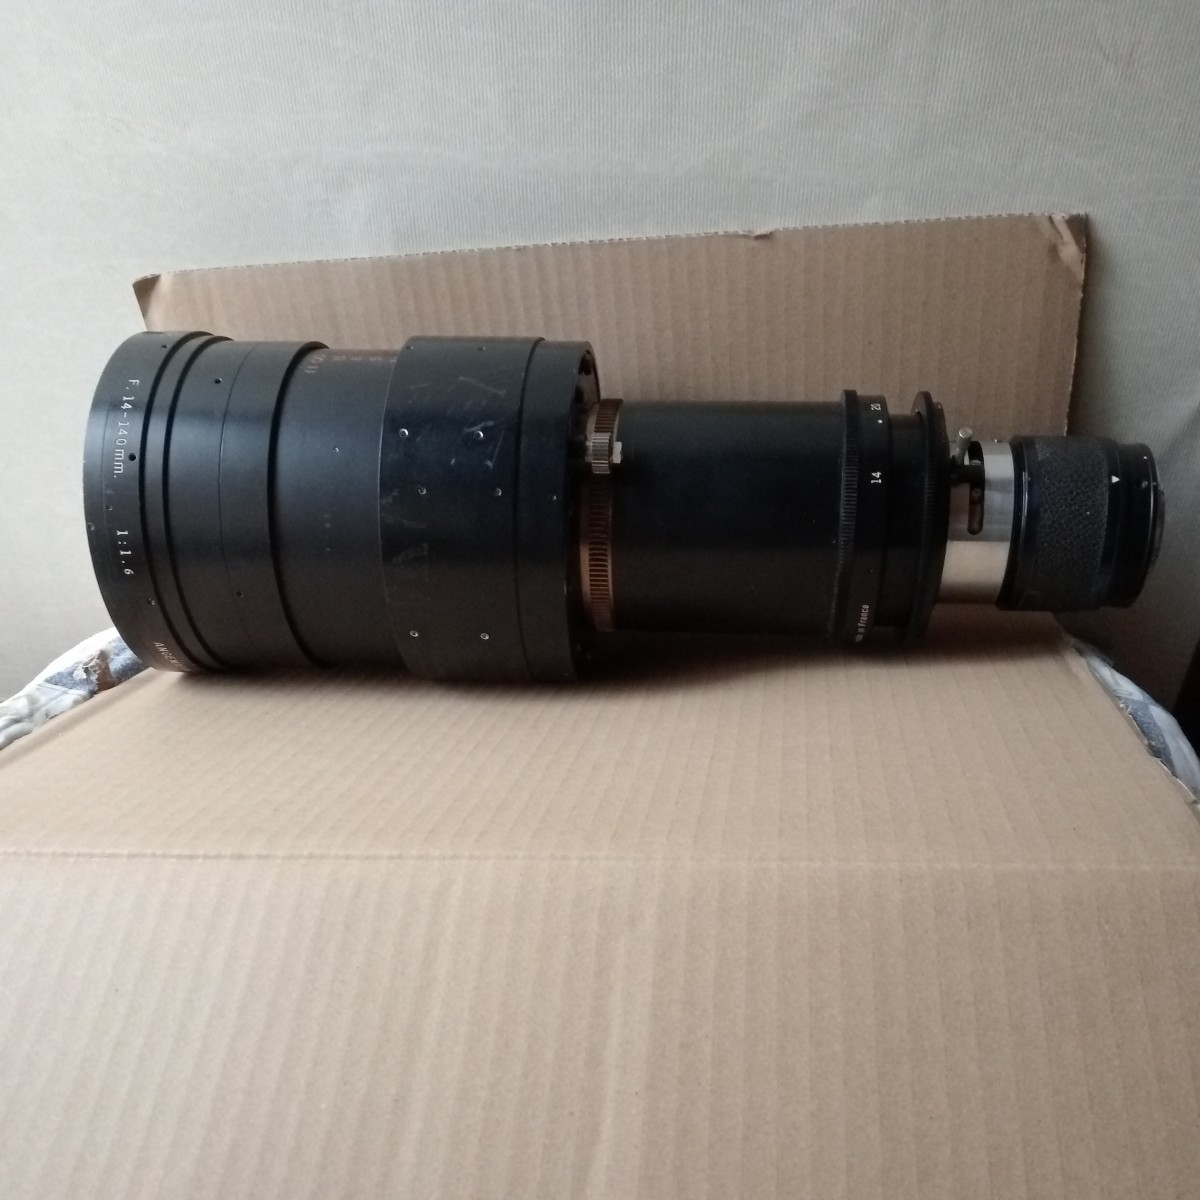 ANGEIEUX ZOOM TYPF 10×14E 14 from 140 millimeter 16mmsine lens?